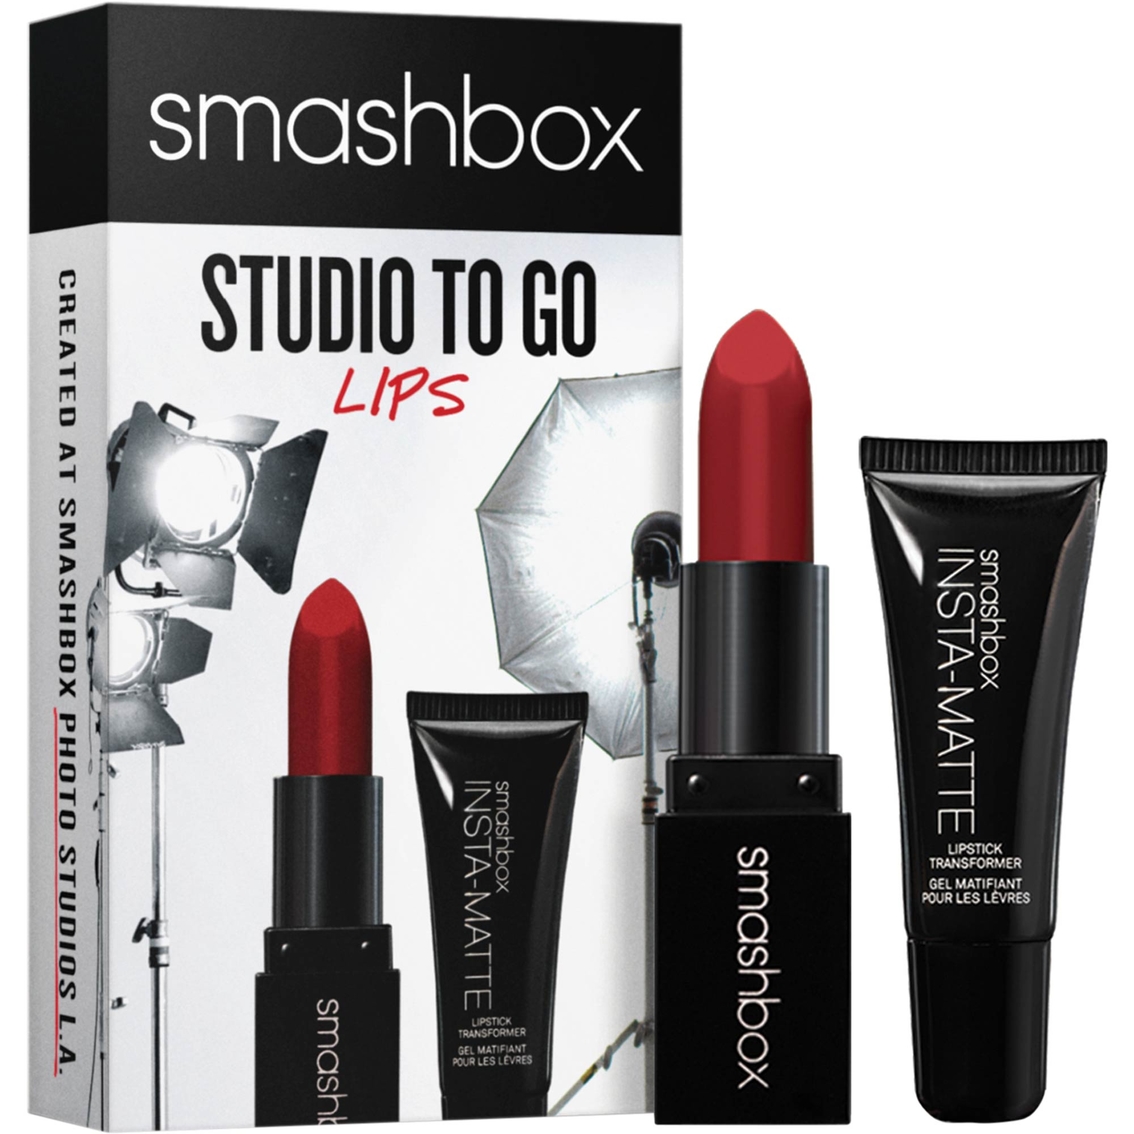 Smashbox Studio To Go: Lips - Image 2 of 2